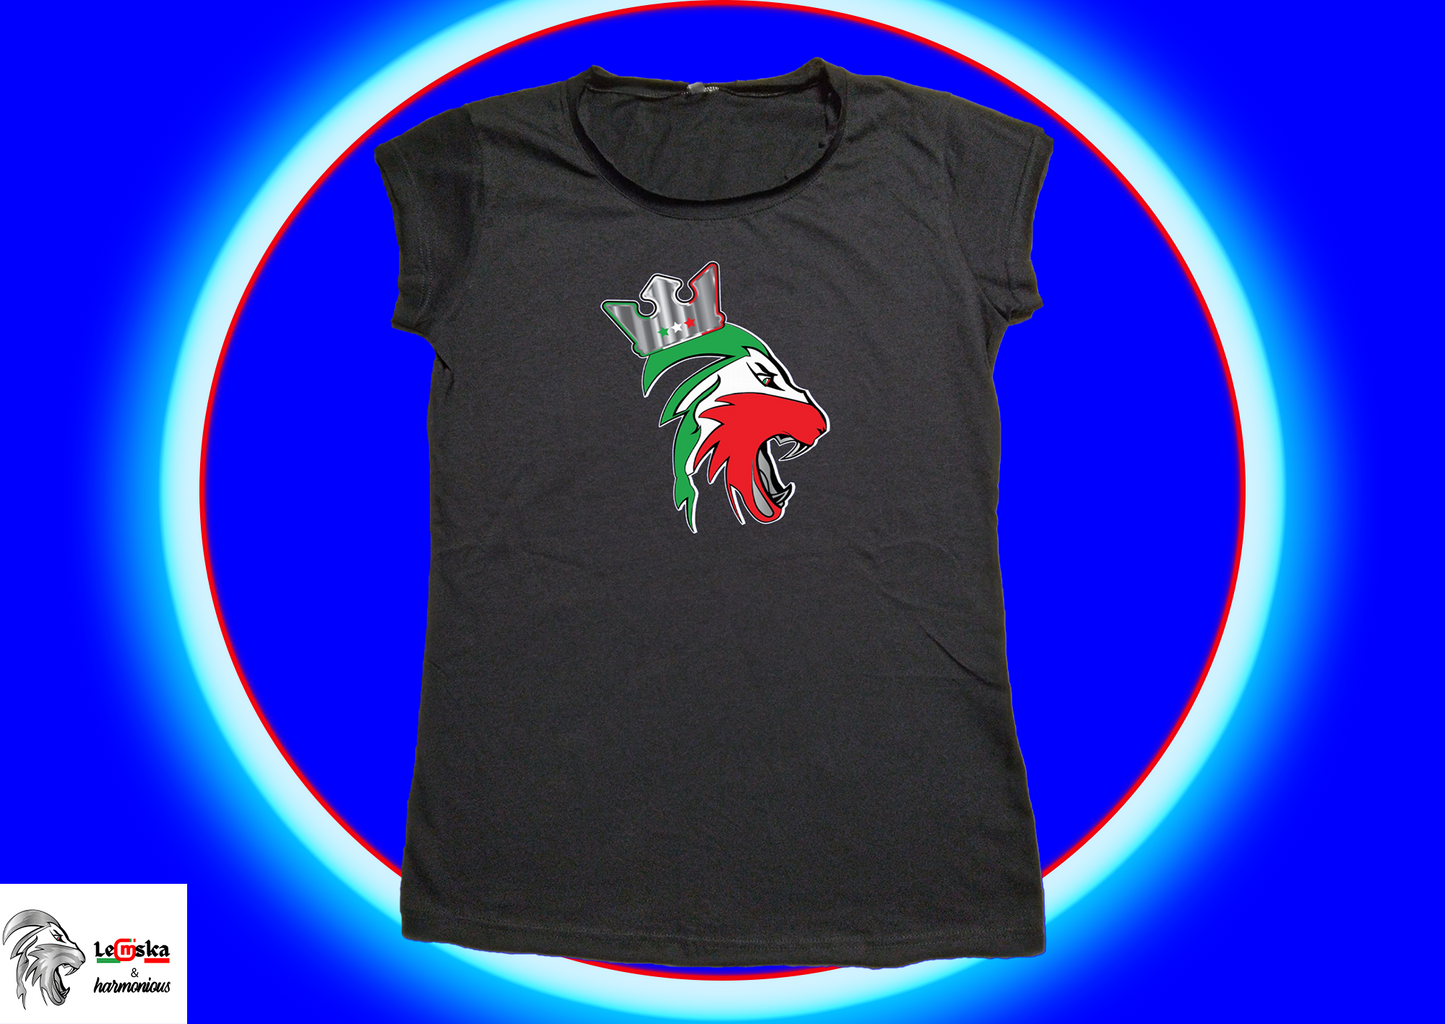 <transcy>Women's T-shirt LIMITED EDITION 100% Made in Italy</transcy>